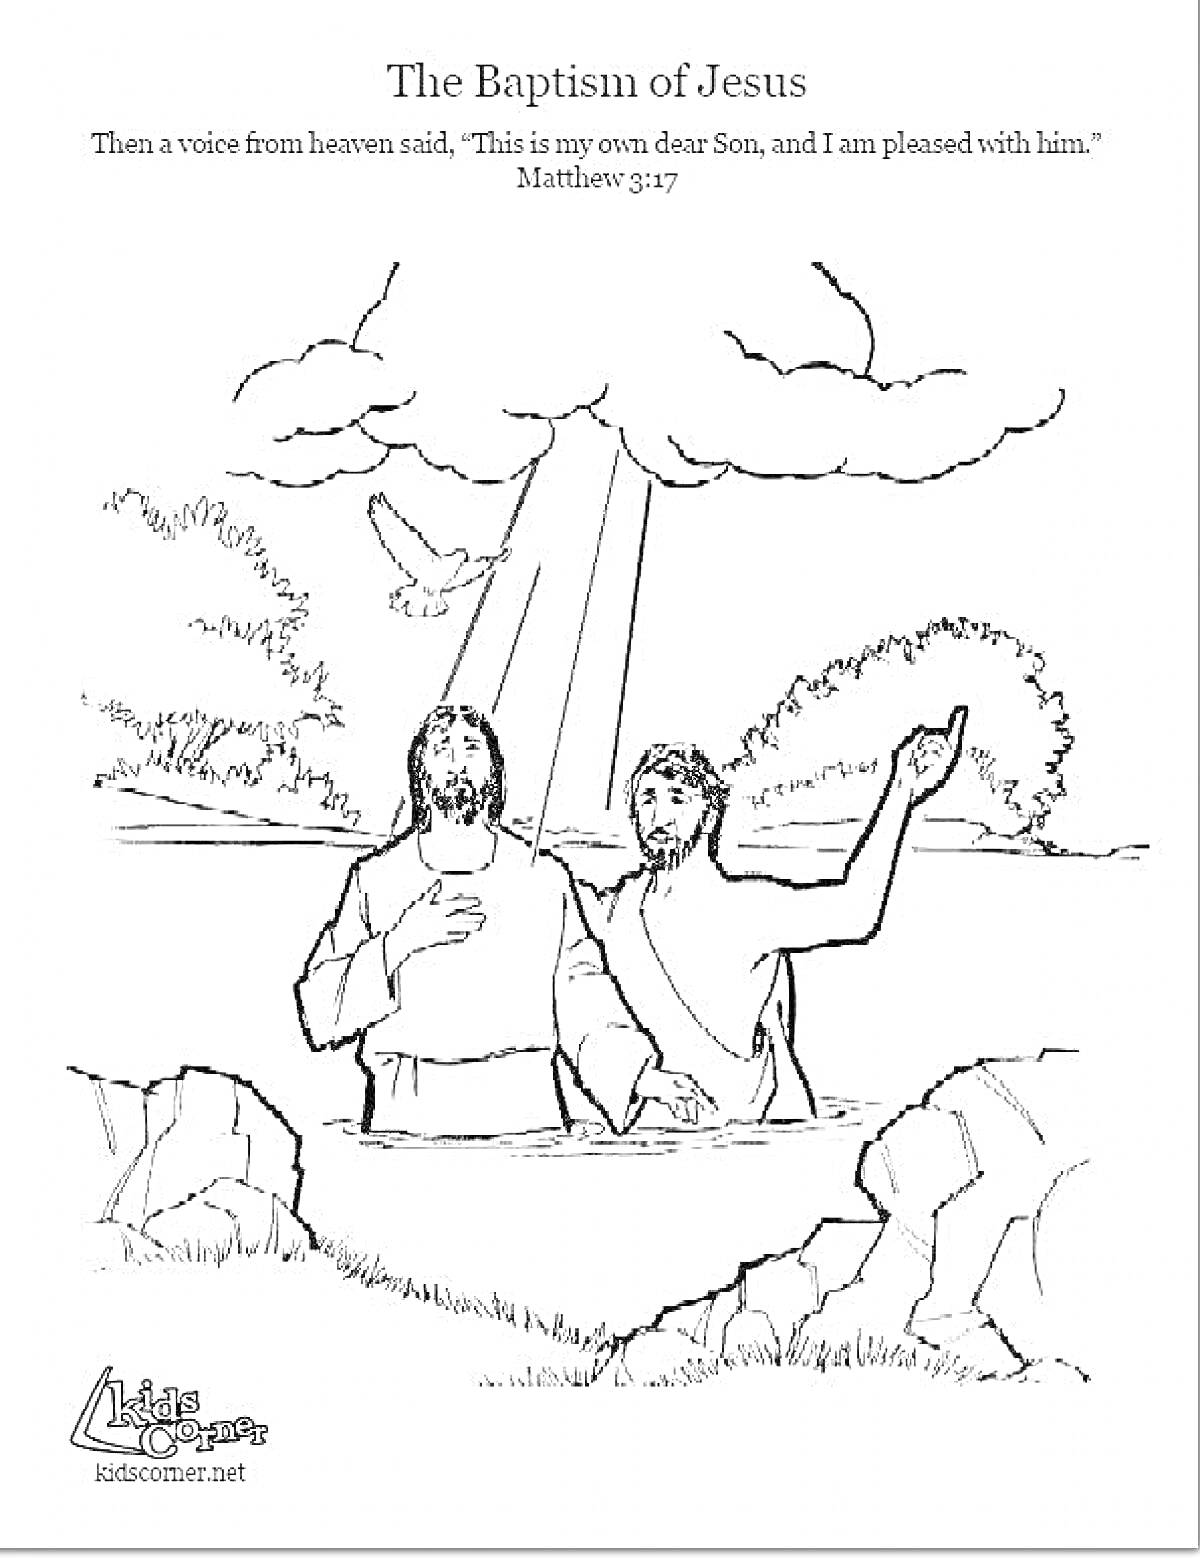 Раскраска Крещение Господне. На рисунке изображены два мужчины, стоящие по пояс в воде, один из которых крестит другого. Над ними летит голубь, символизирующий Святого Духа. Вдали видны деревья и кусты. Через облака проходят лучи света.